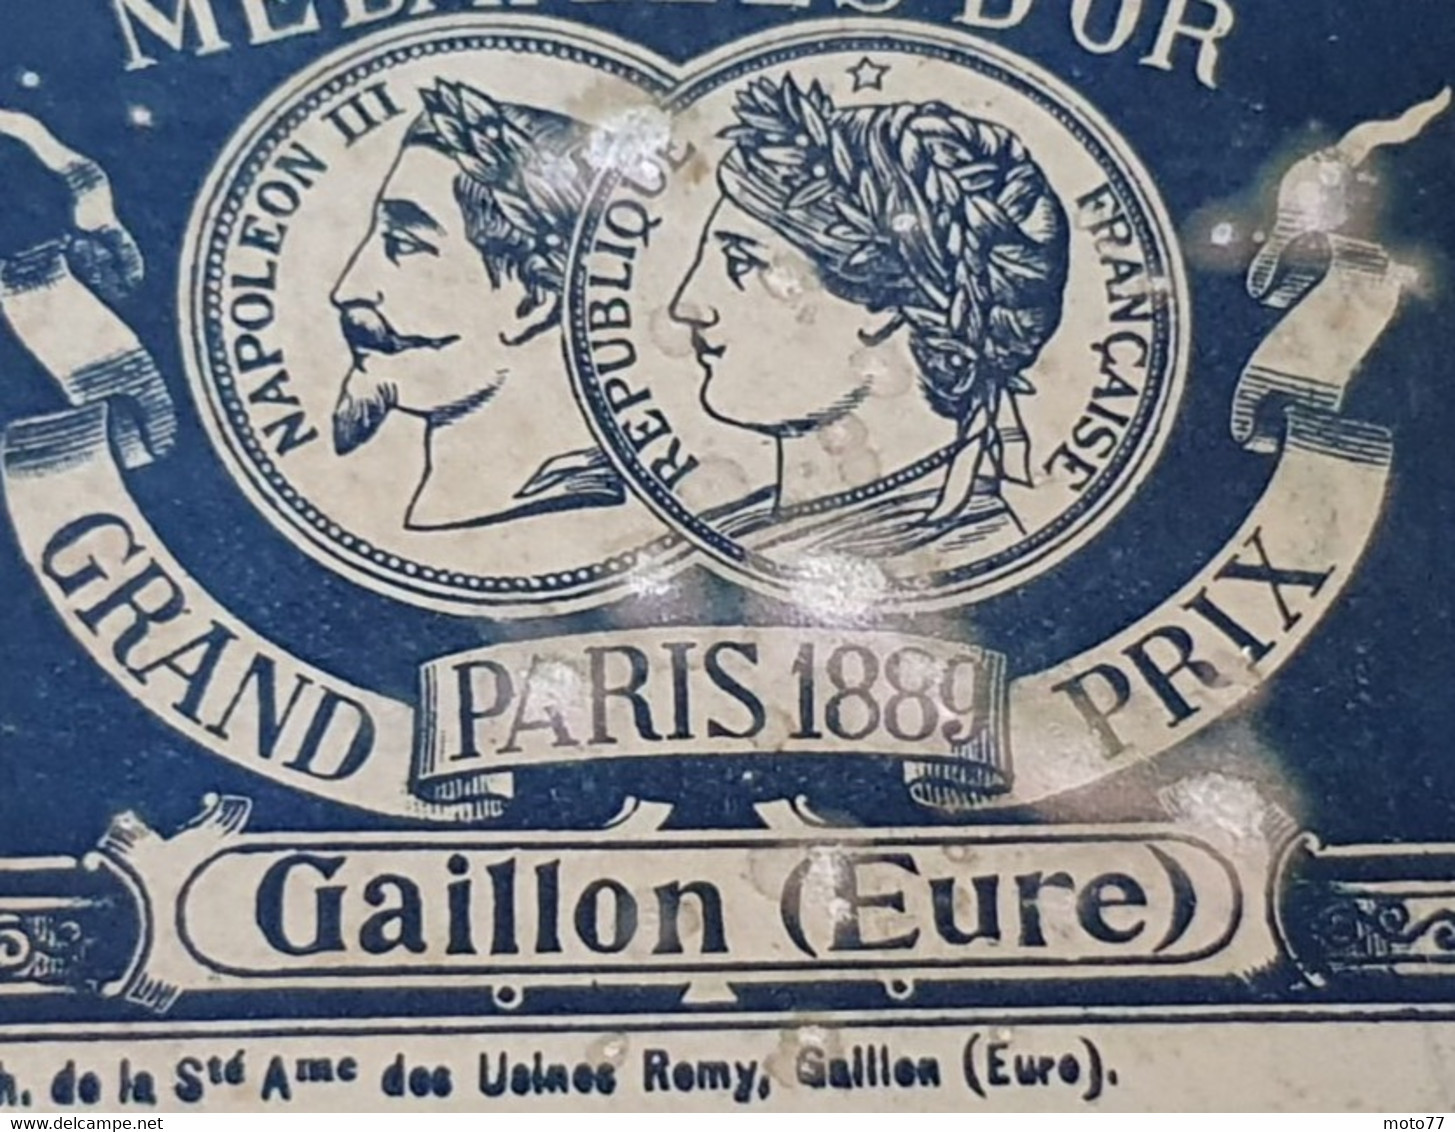 Ancienne BOITE Carton Pleine N2- Publicité AMIDON REMY - Tête De Lion - Prix Exposition Paris 1867 1878 1889 - Vers 1900 - Dozen